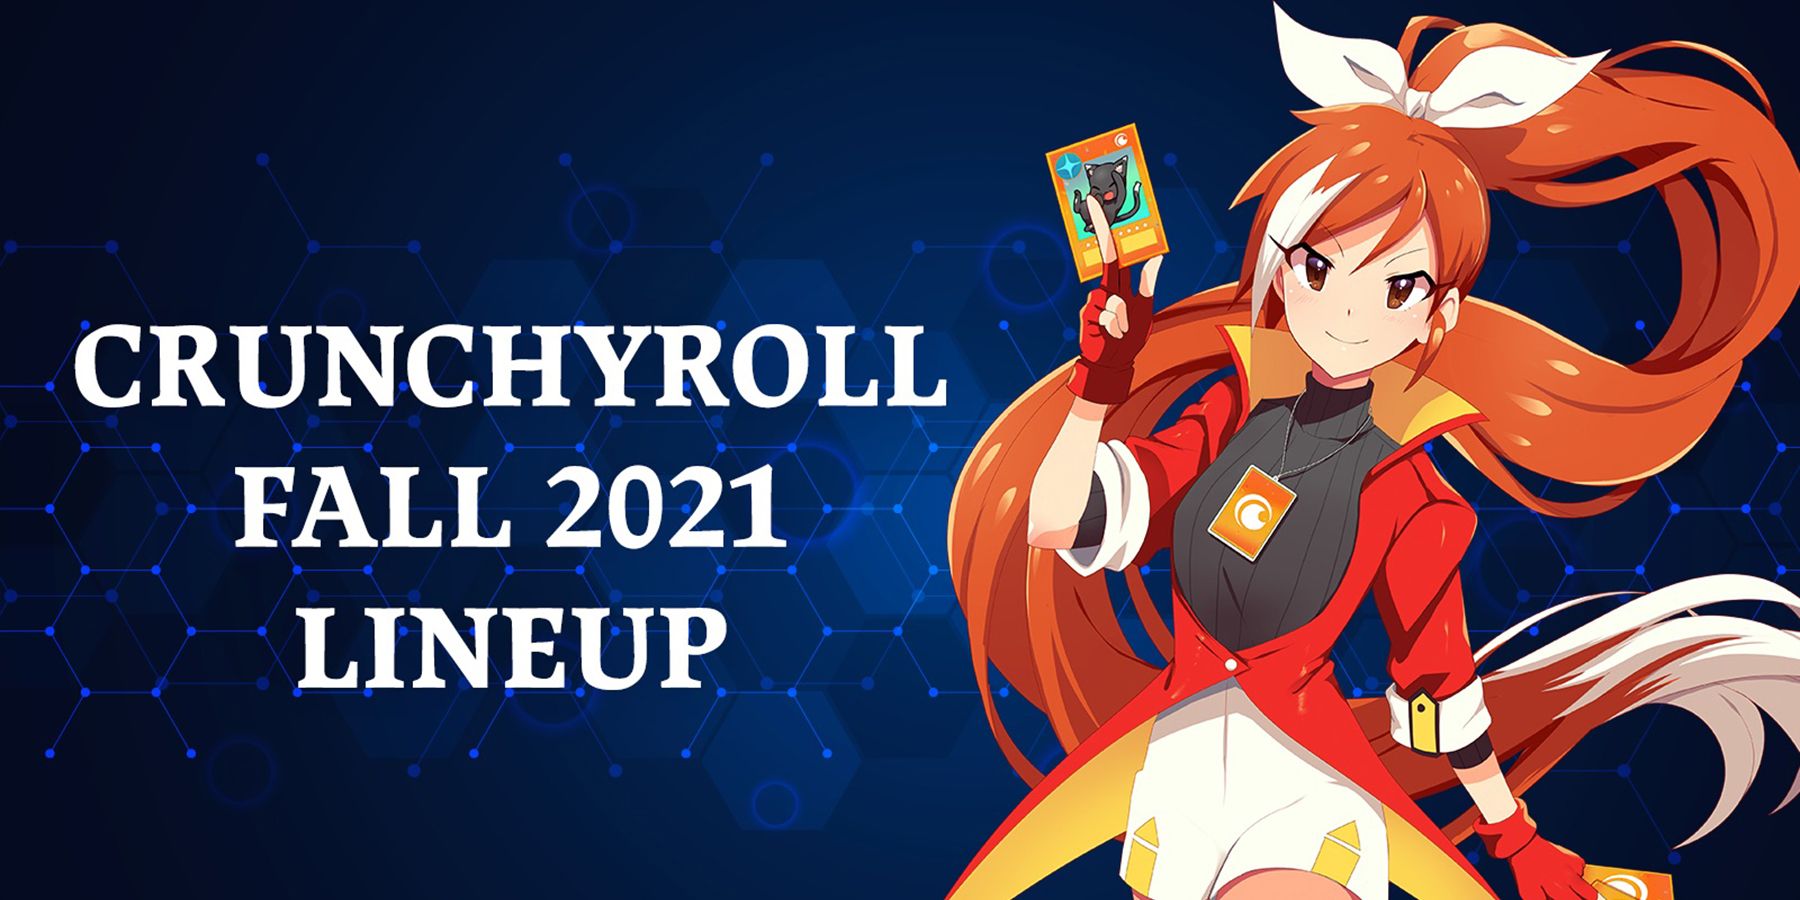 Crunchyroll ავლენს 2021 წლის შემოდგომის ამაღელვებელ ხაზს, დემონების მკვლელის ჩათვლით